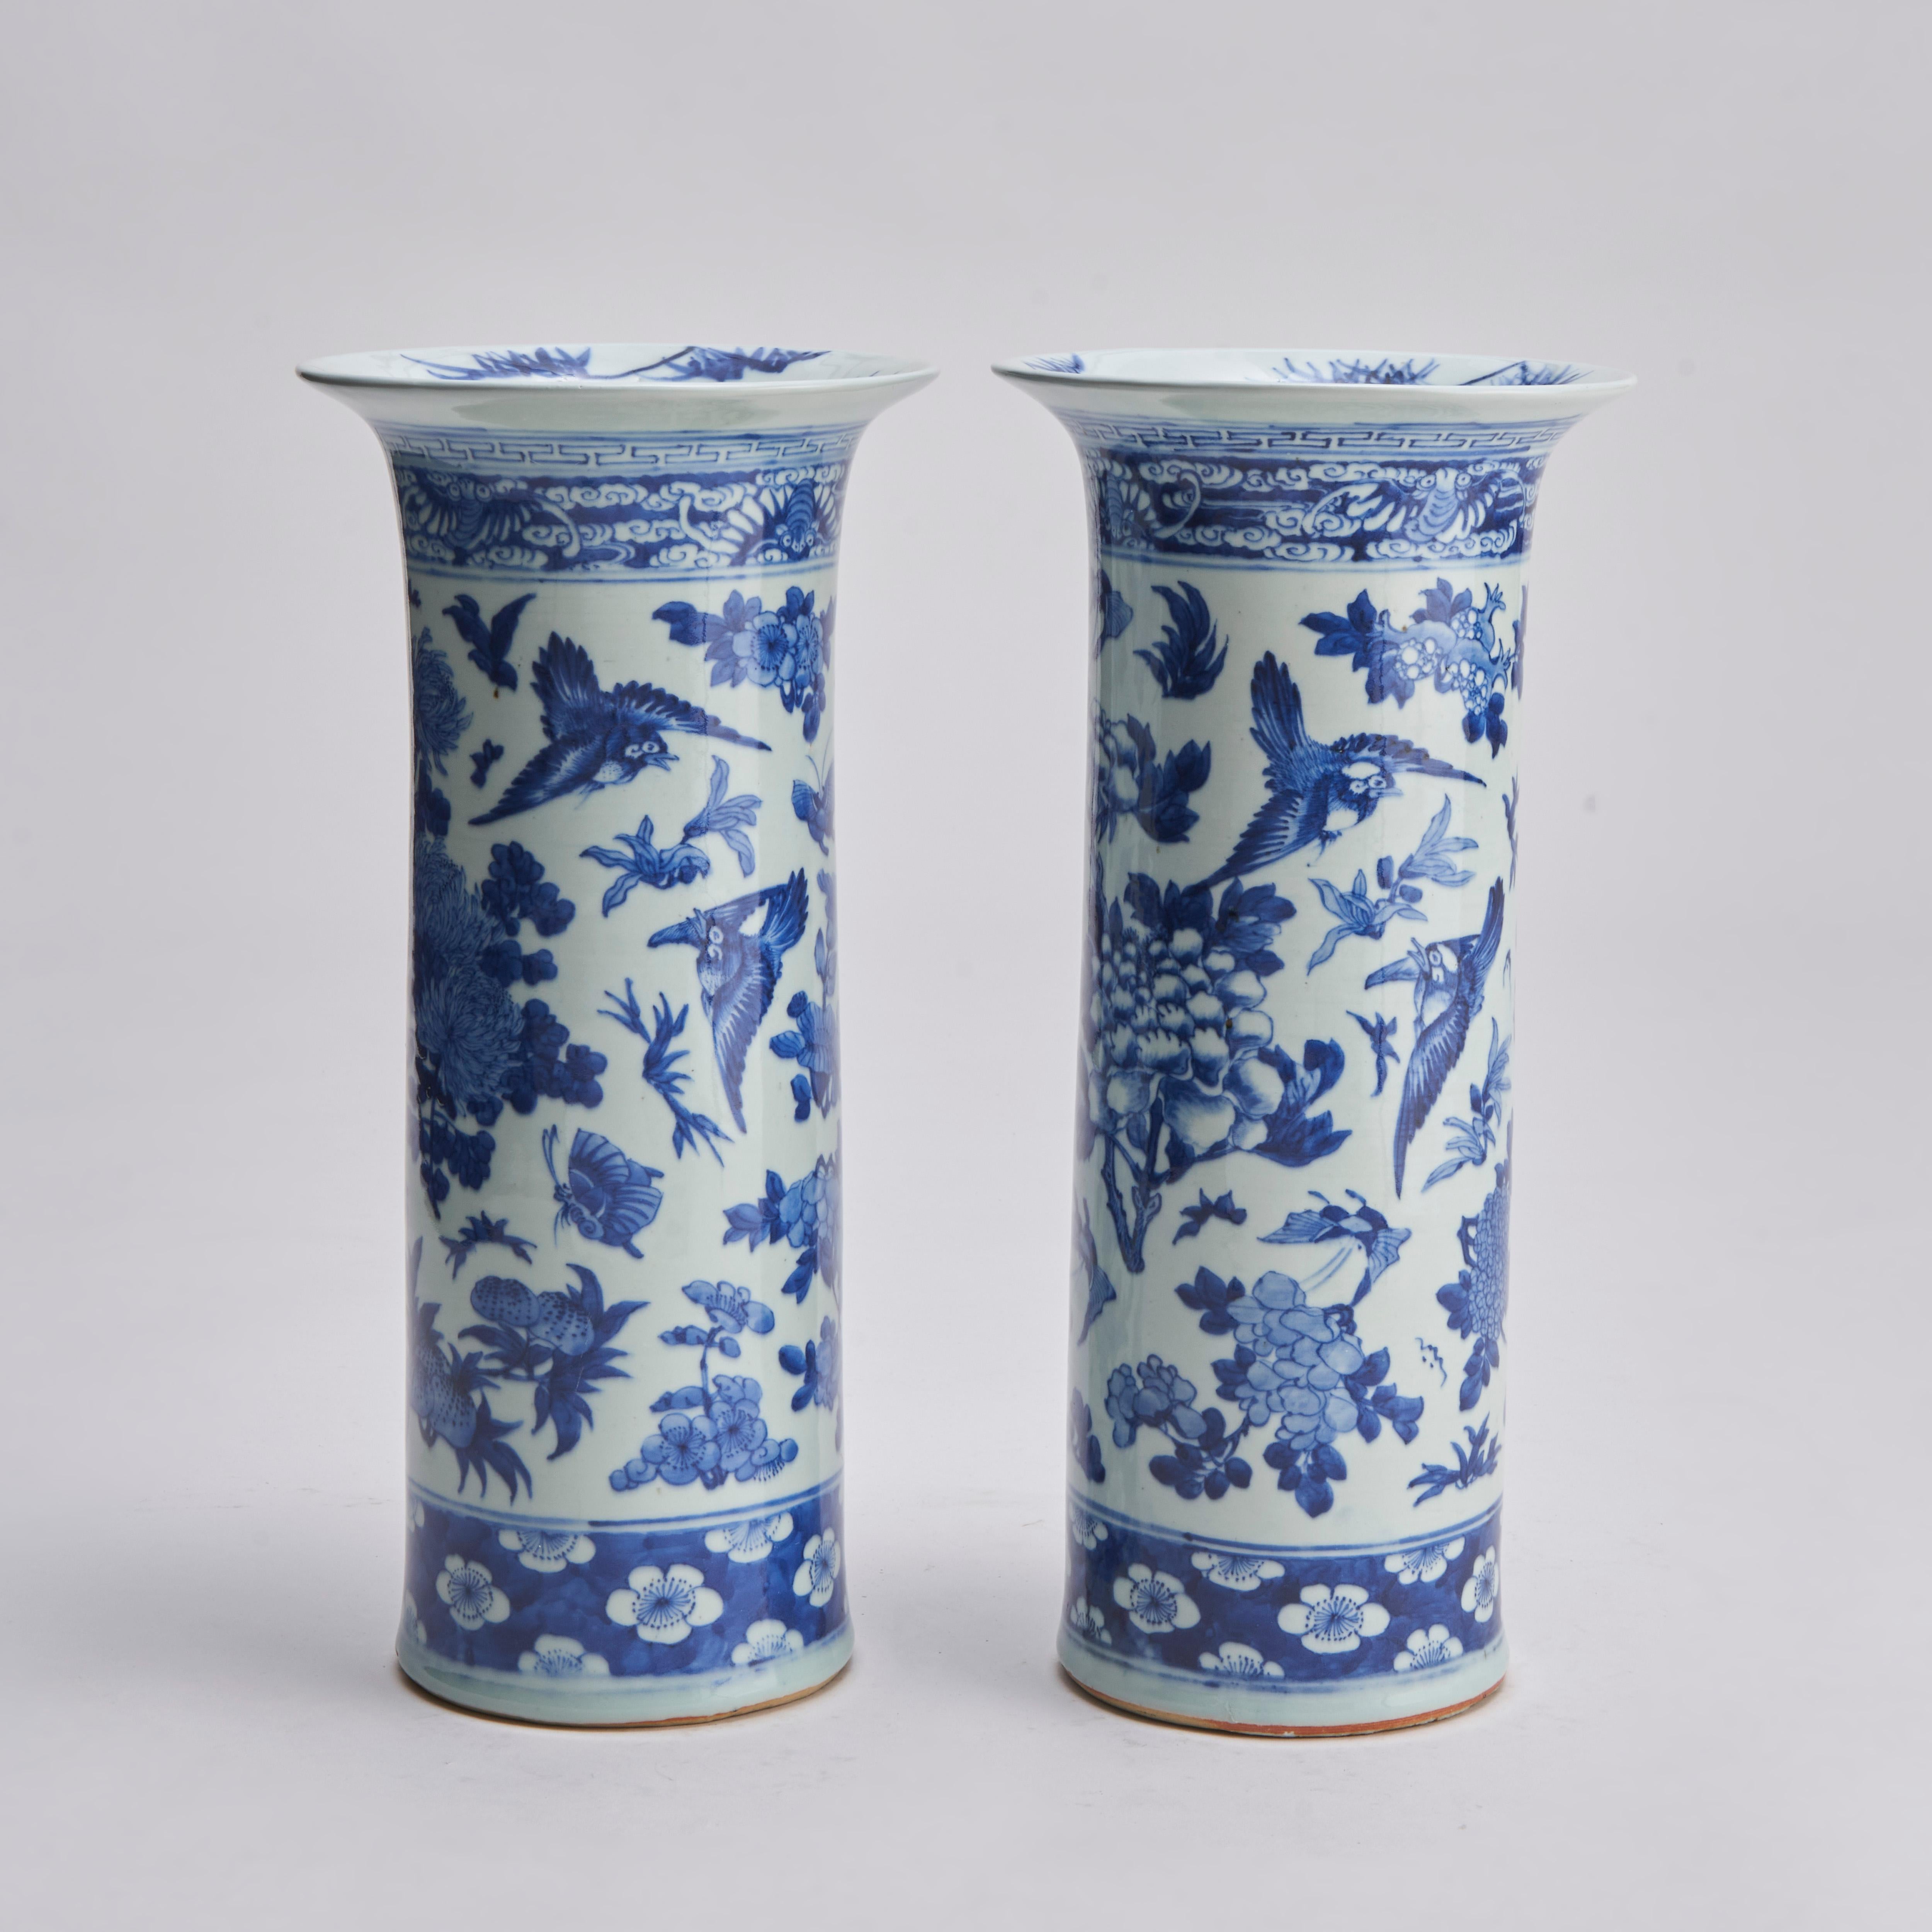 Paire de vases à manchon à bord évasé en bleu et blanc de la Chine du XIXe siècle, à décor de nombreuses fleurs, dont des pivoines et des hortensias. Entouré de papillons et d'oiseaux chanteurs, le pied est orné d'un motif de fleurs d'aubépine, le